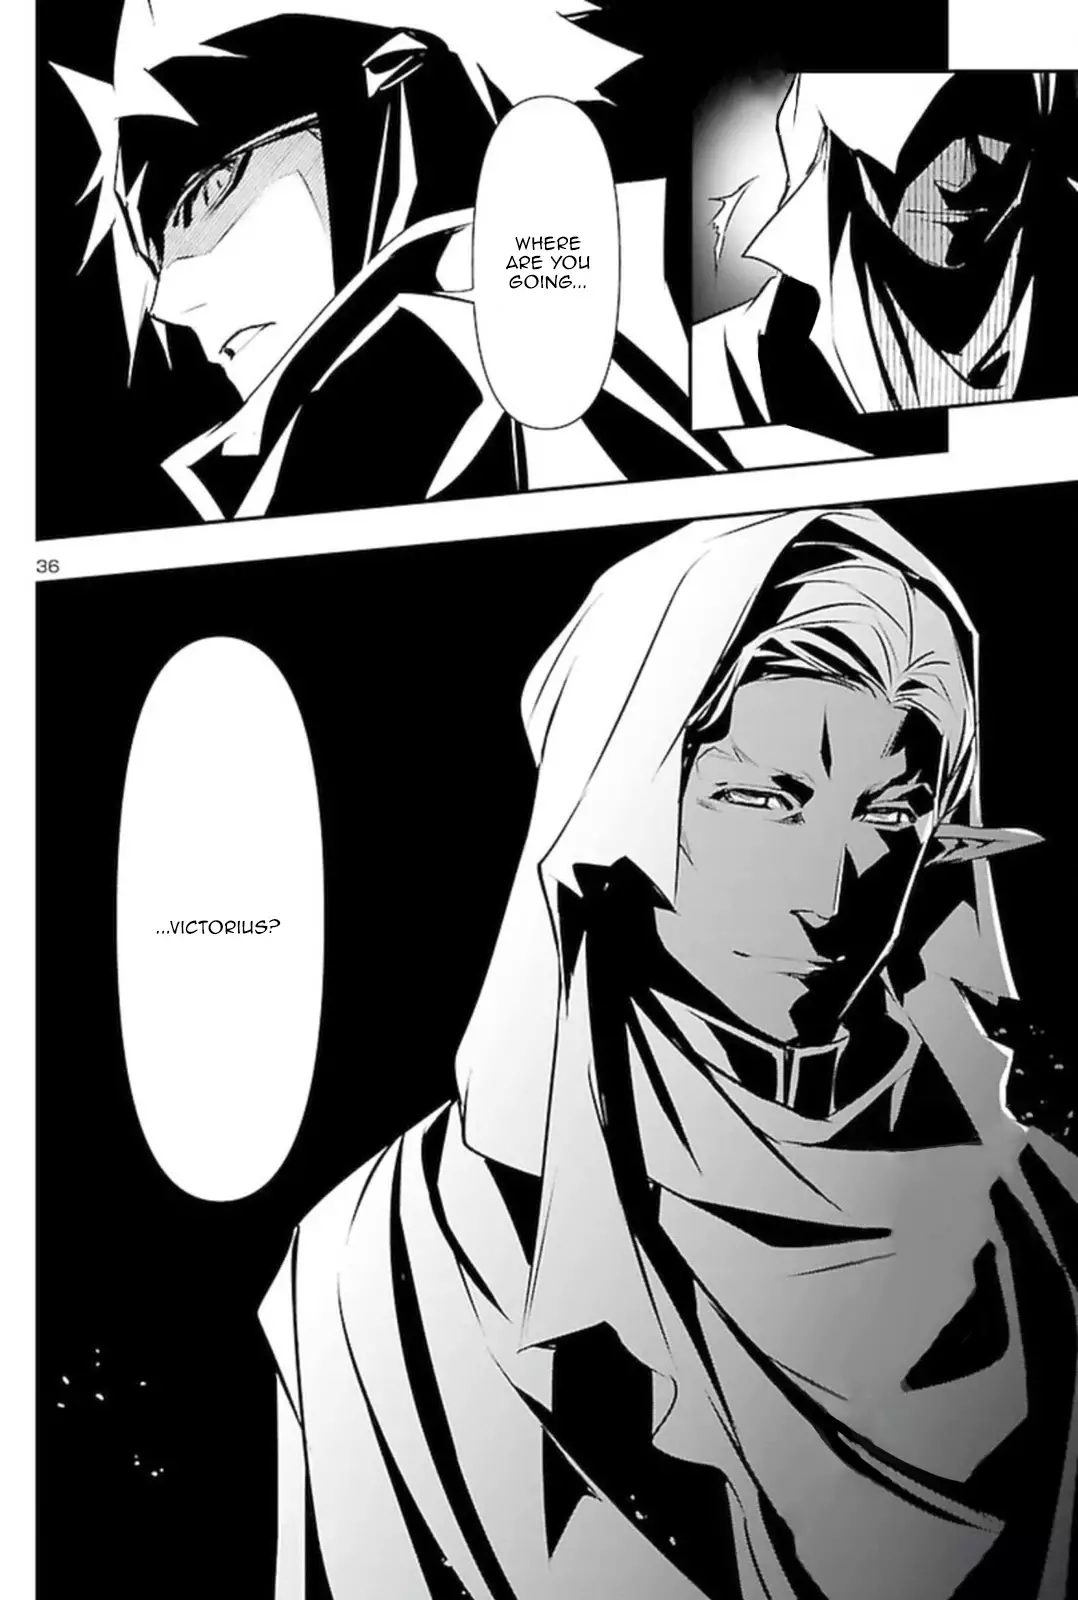 Shinju no Nectar - 53 page 36